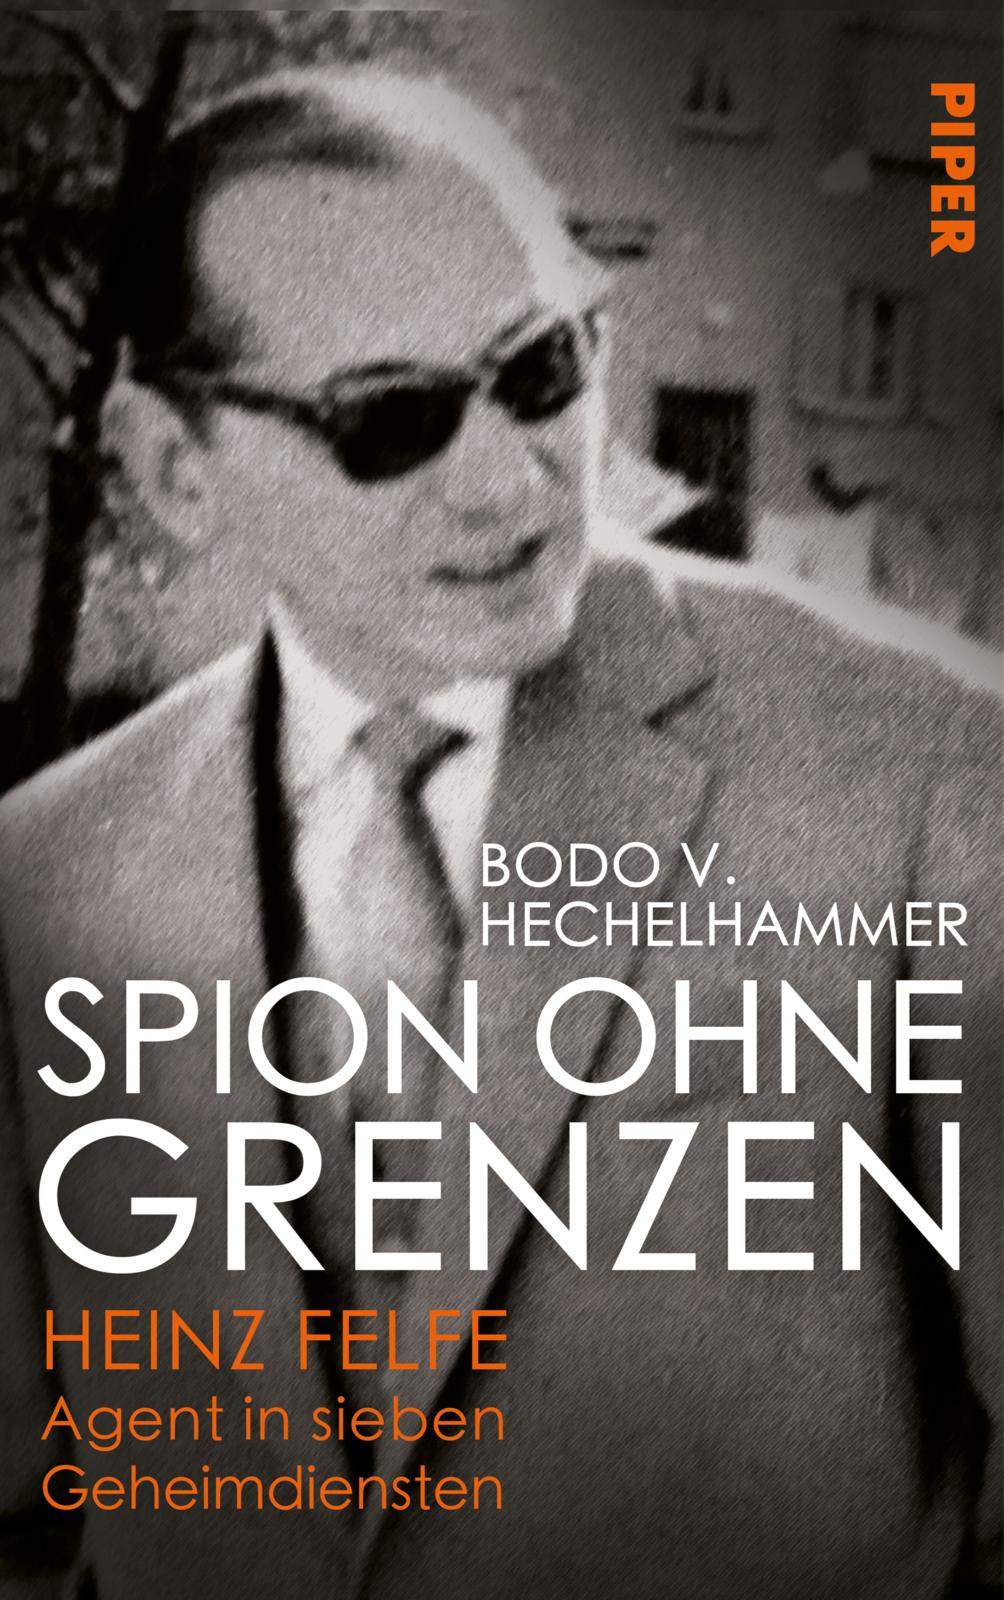 Buchcover "Spion ohne Grenzen" (c) Piper Verlag GmbH, München, 2019, Umschlagabbildung: BNDA, 5157 (OT), Umschlaggestaltung: Büro Jorge Schmidt, München